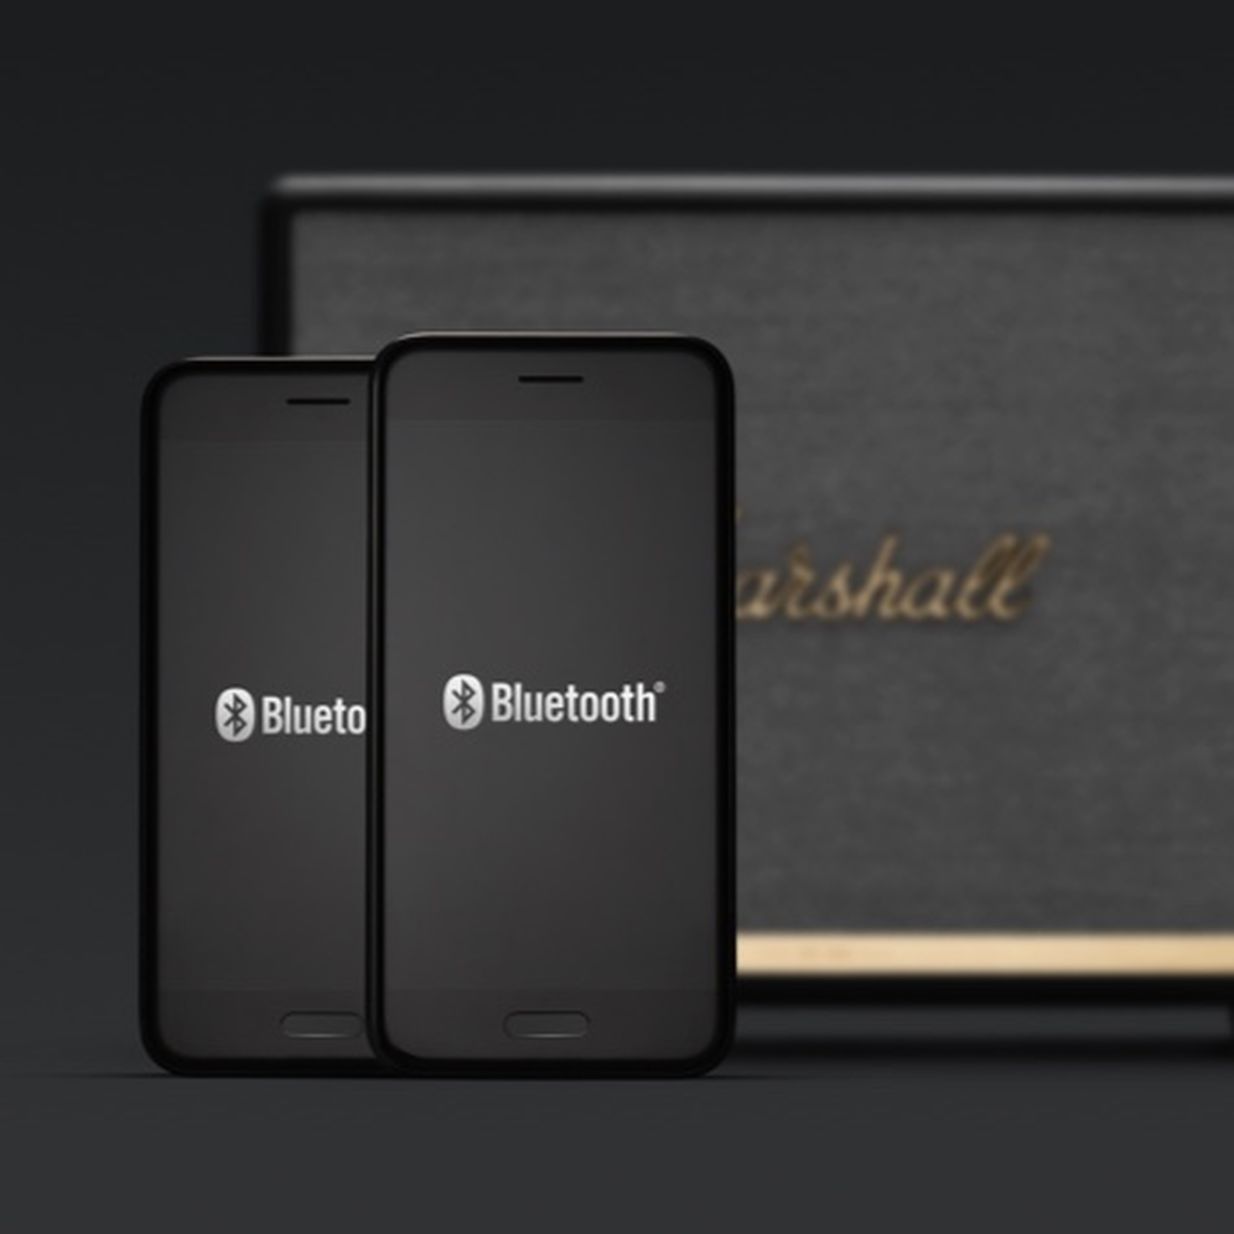 Marshall Woburn II Bluetooth